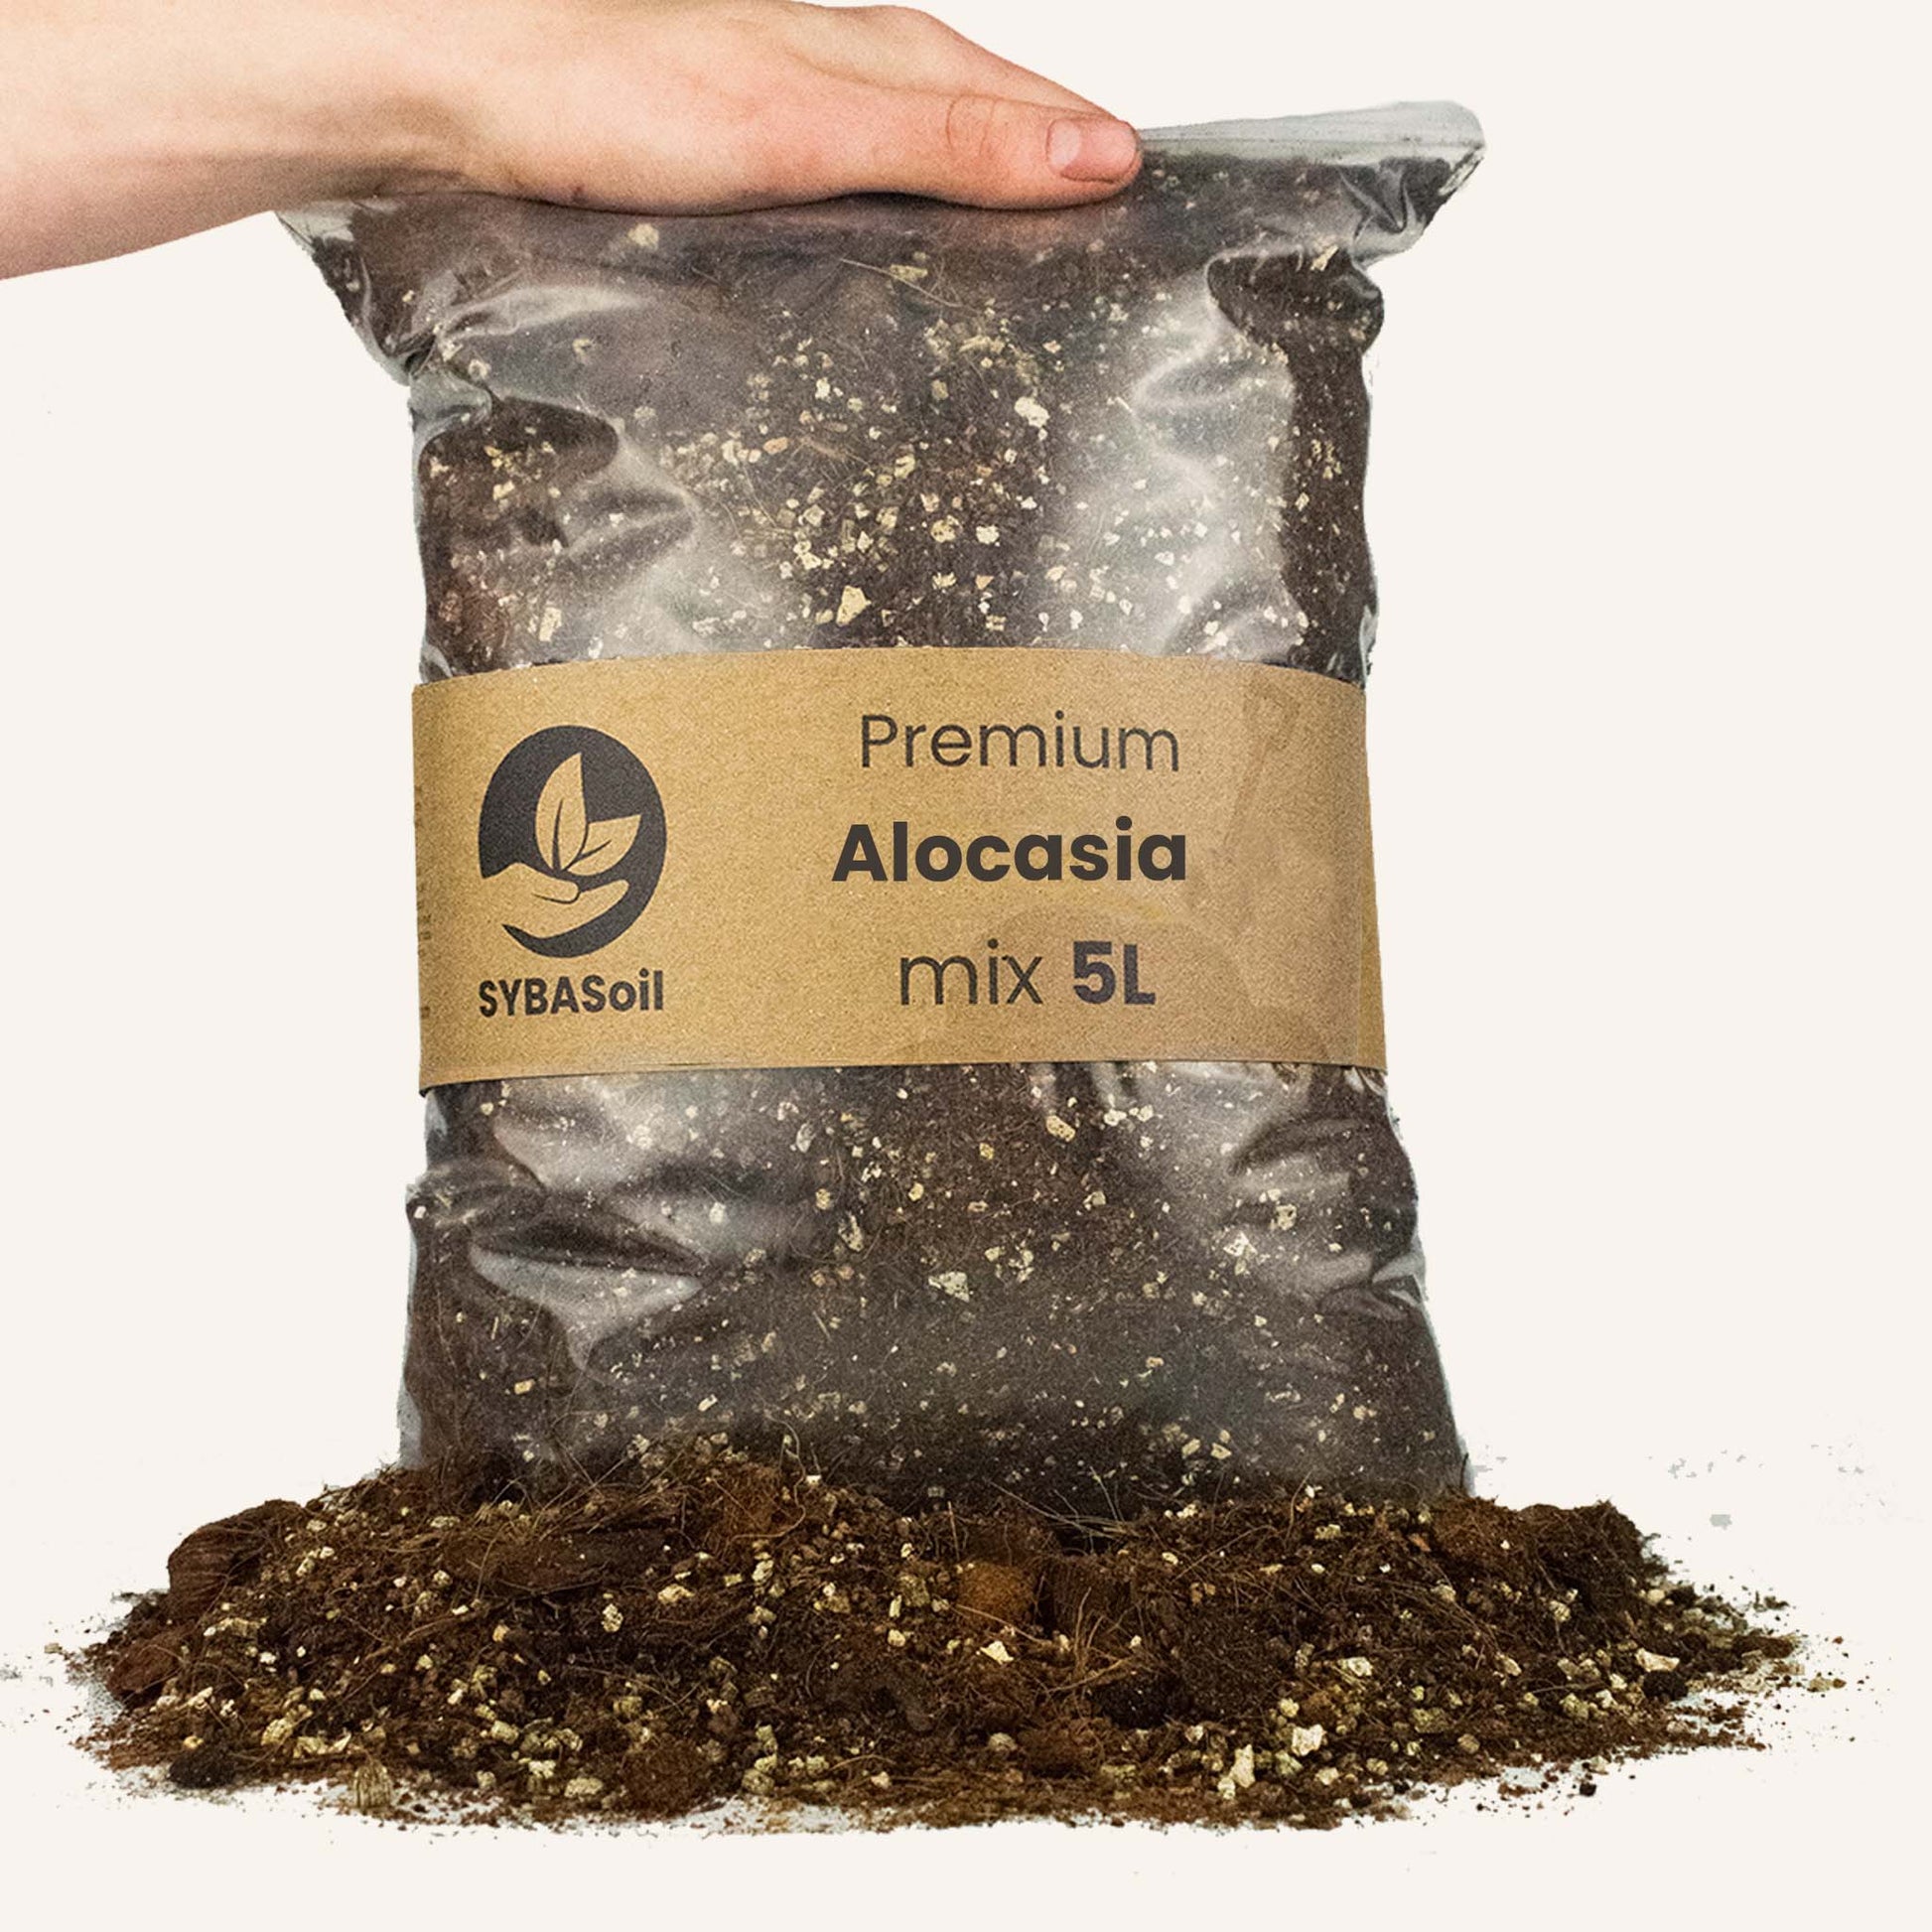 Pose med jord lavet specielt til Alocasia planter